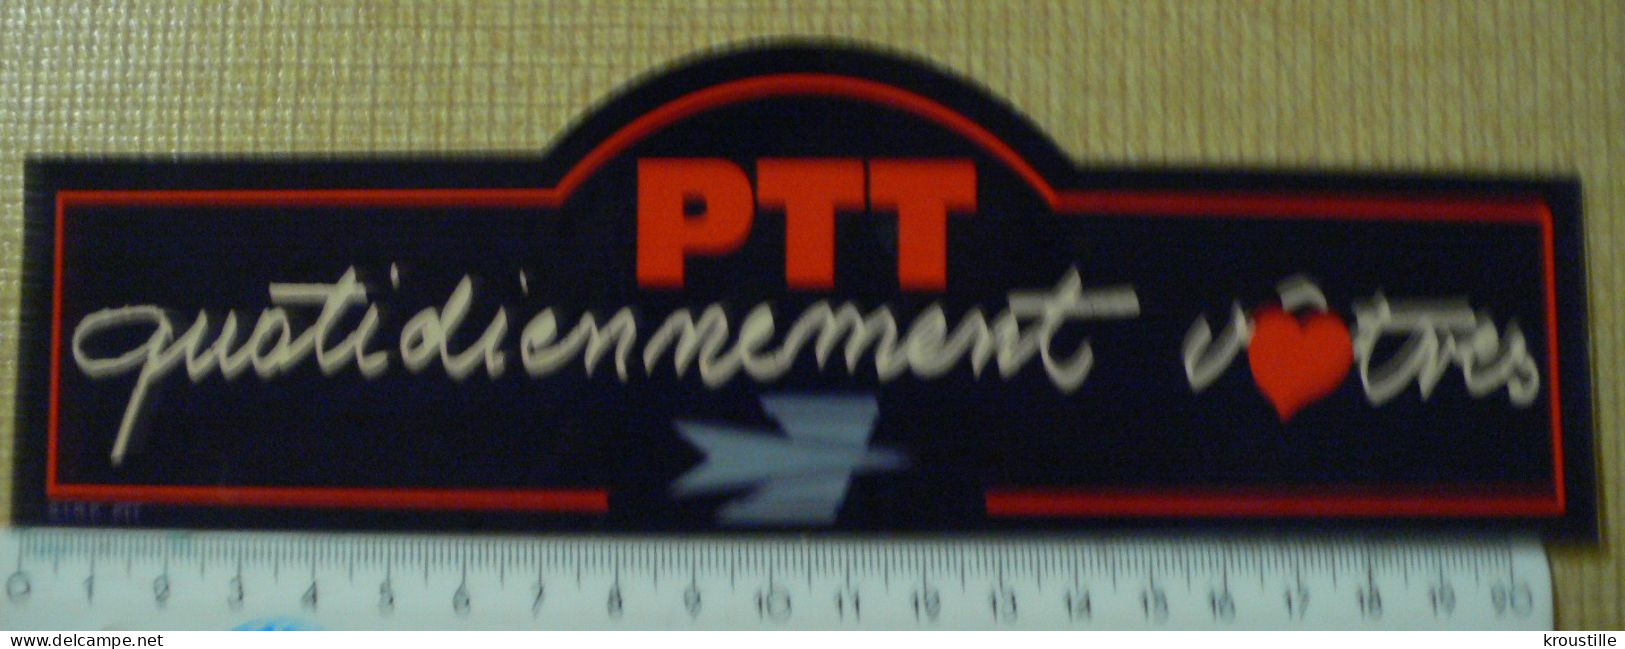 AUTOCOLLANT PTT - QUOTIDIENNEMENT VOTRES - Aufkleber